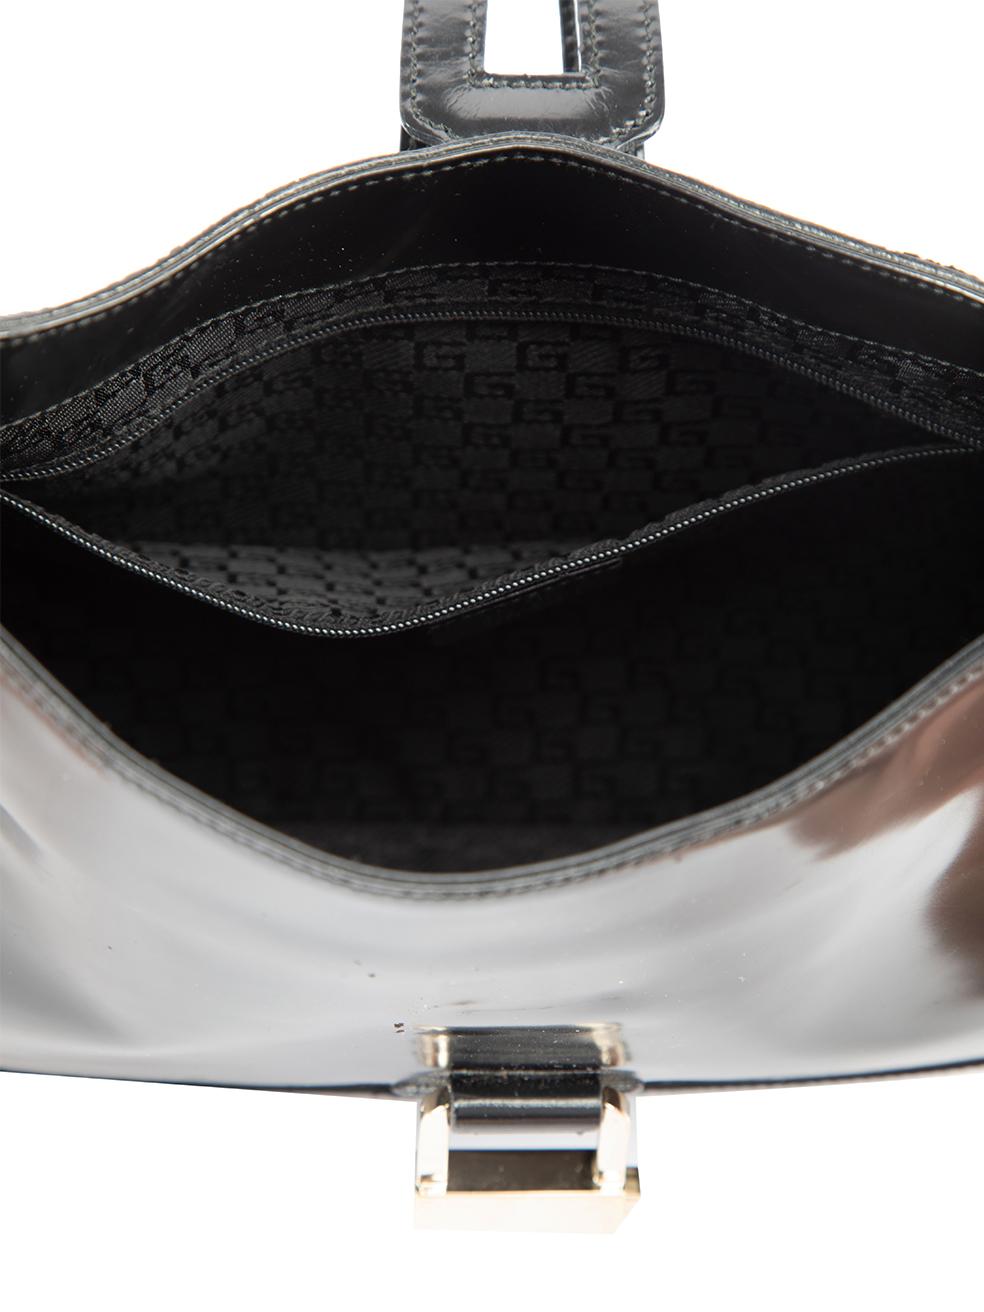 Pre-Loved Gucci Women's Vintage Black Patent Leather Shoulder Bag 3